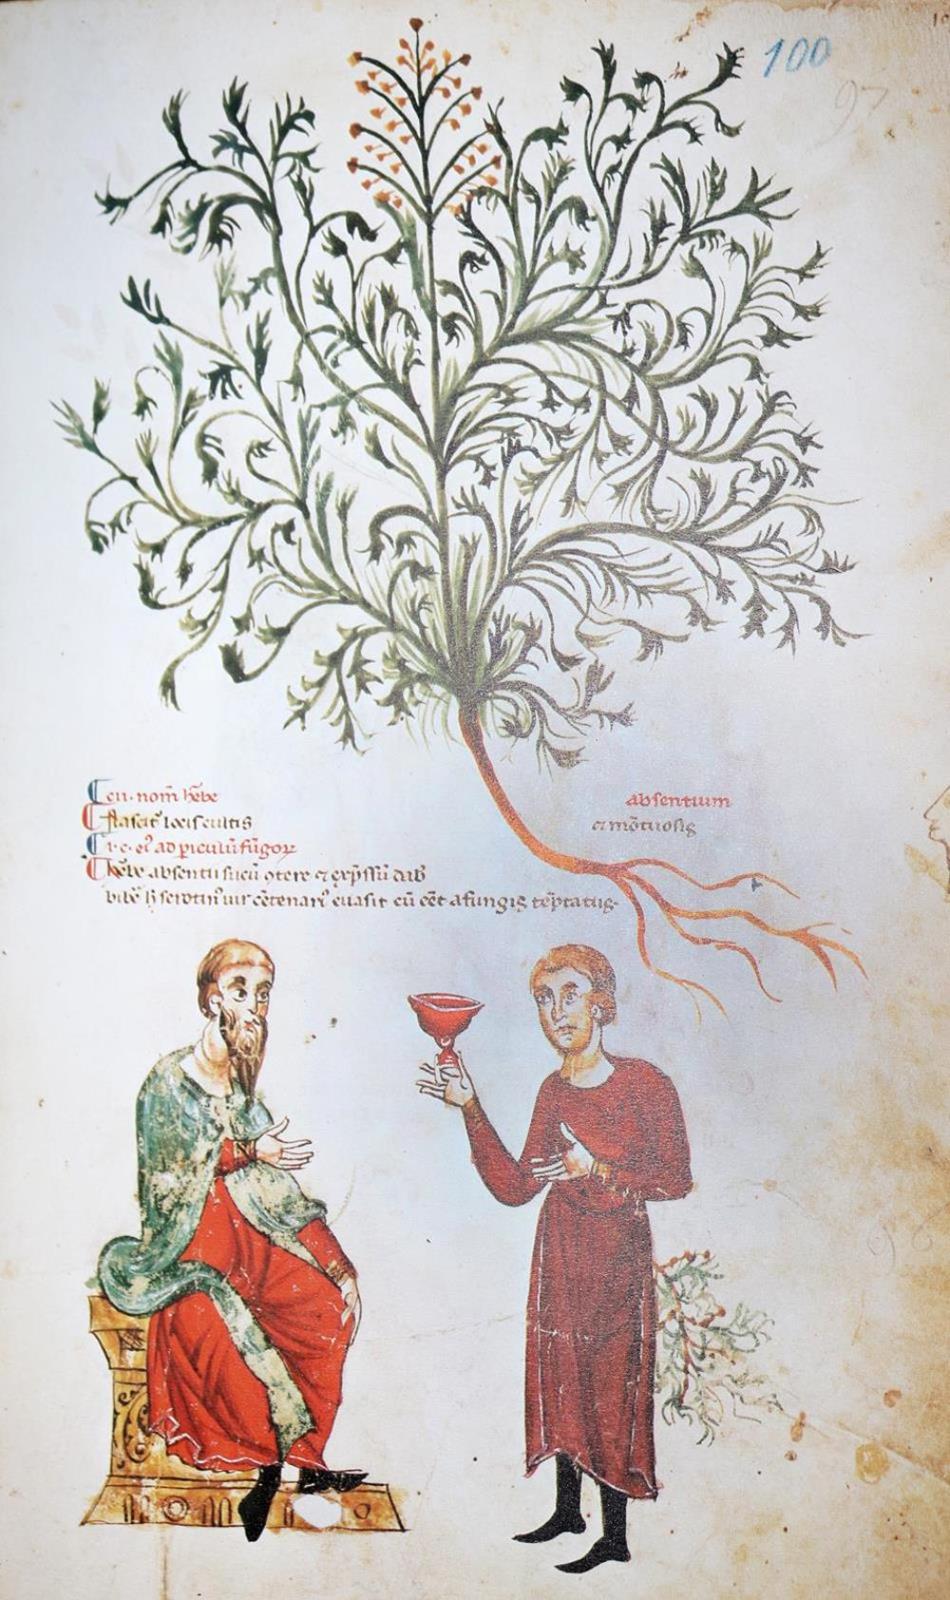 Medicina antiqua libri quattuor medecinae. | Bild Nr.1